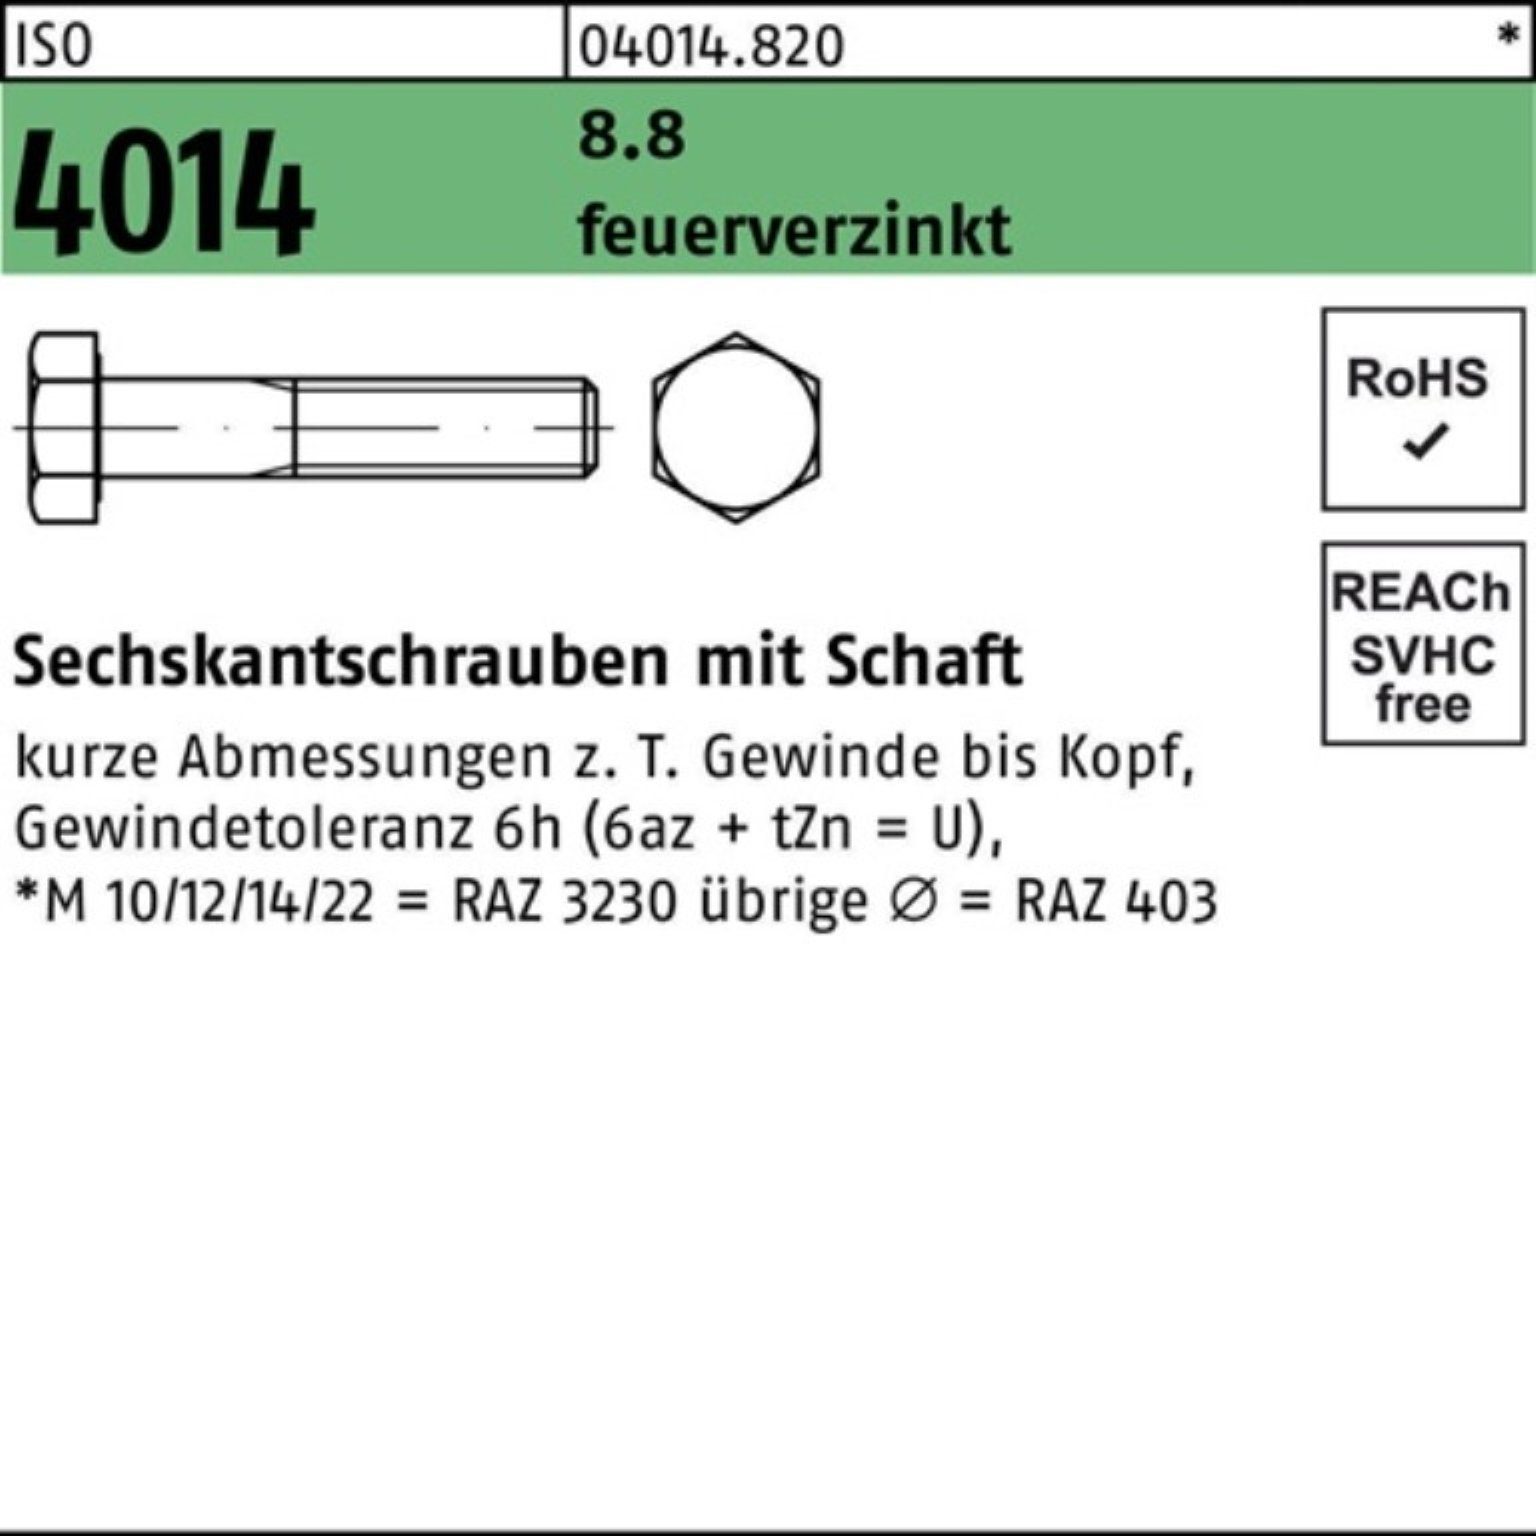 Bufab Sechskantschraube 100er Pack Sechskantschraube ISO 4014 Schaft M20x 240 8.8 feuerverz. 1